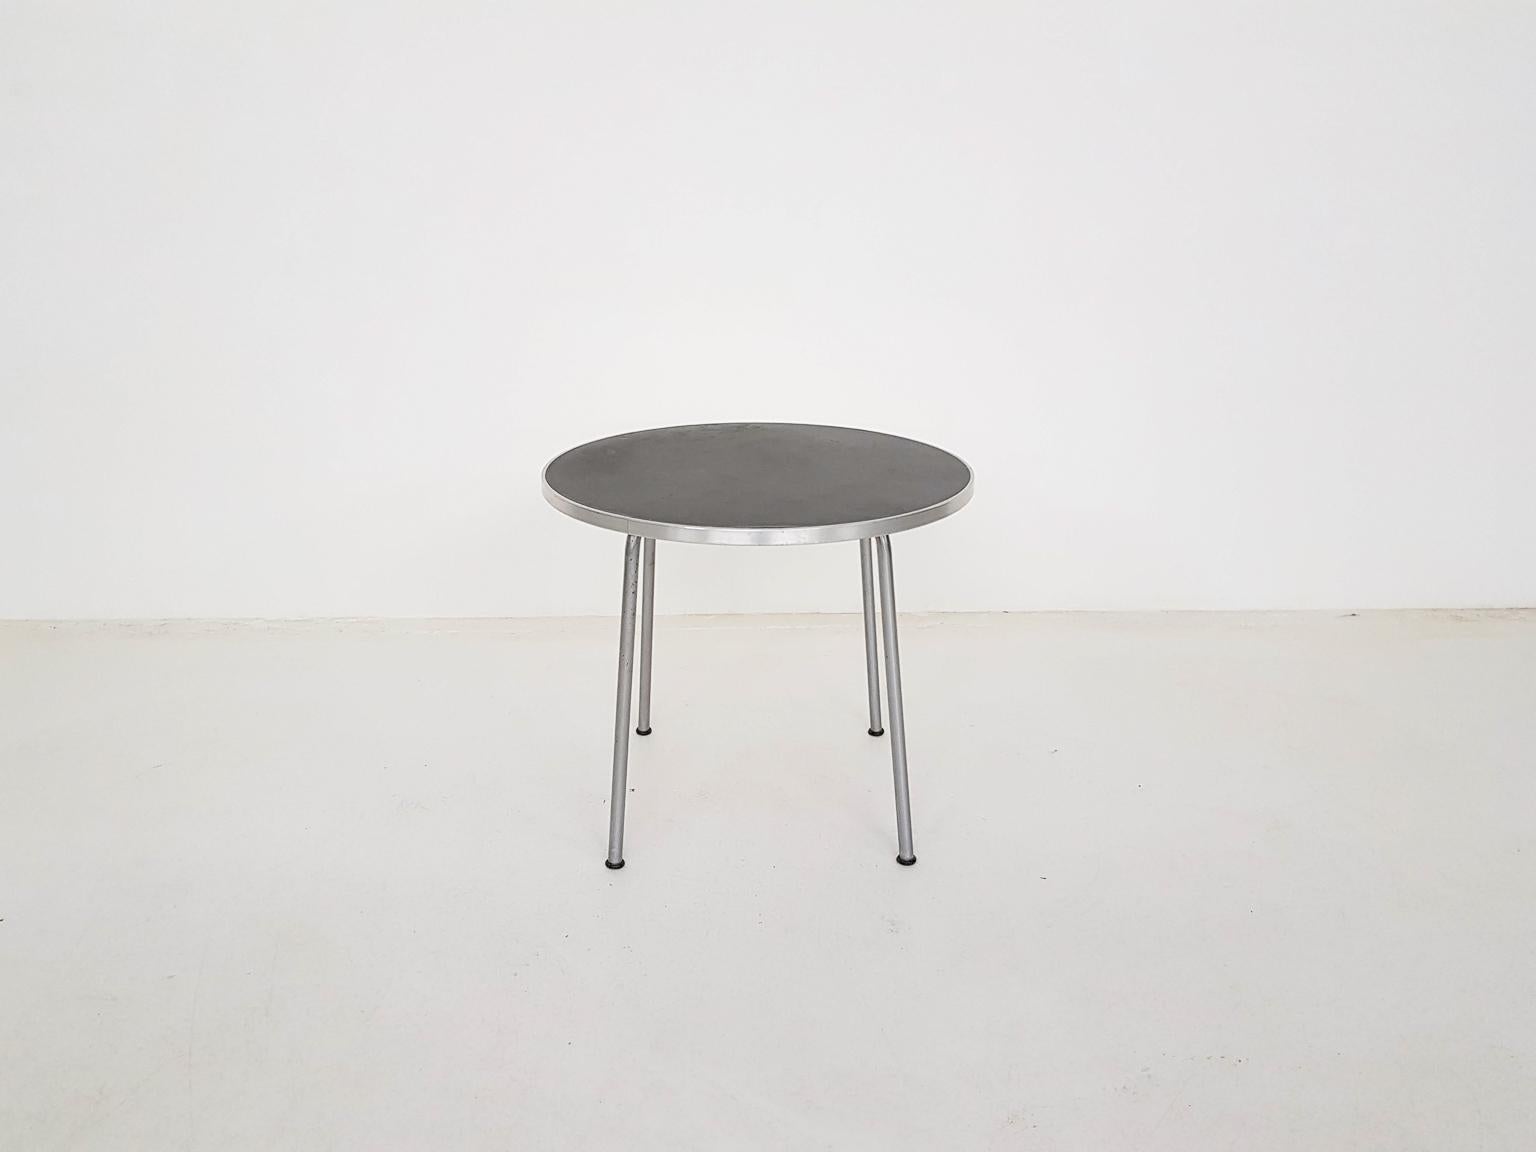 Design industriel néerlandais précoce par Gipsen, Pays-Bas. Ce modèle 501/3601 de table d'appoint ou de table basse a été fabriqué par Gispen en 1954. La table se compose d'un cadre métallique tubulaire et d'un plateau en bois recouvert d'un